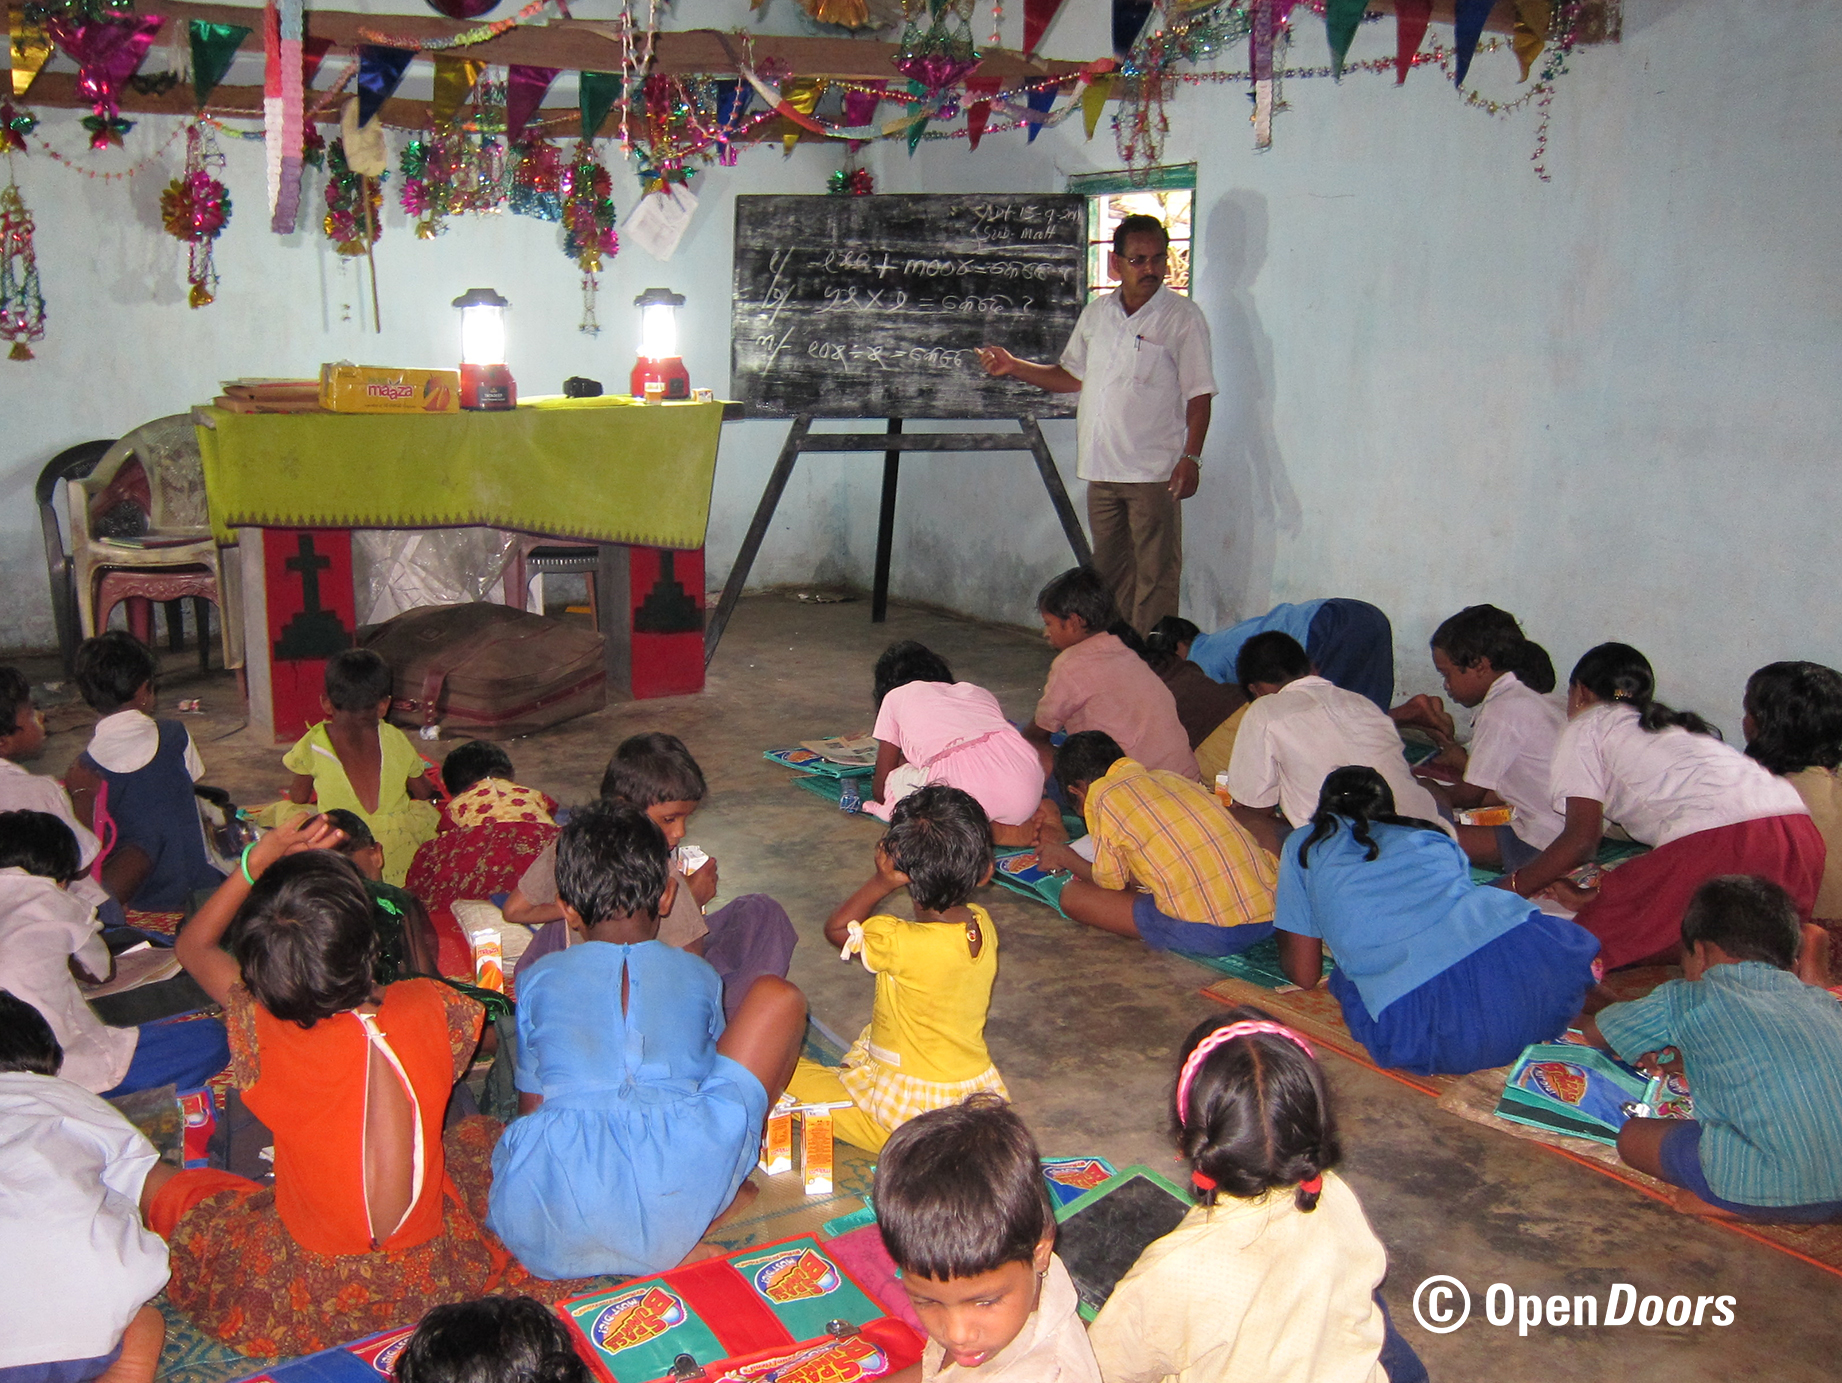 Open Doors wspiera zakładanie szkół dla dzieci chrześcijańskich w Kandhamal, które były dyskryminowane w szkołach publicznych ze względu na swoją wiarę. Do szkół otwieranych z pomocą Open Doors mogą uczęszczać zarówno dzieci chrześcijan jak również hinduistów. 